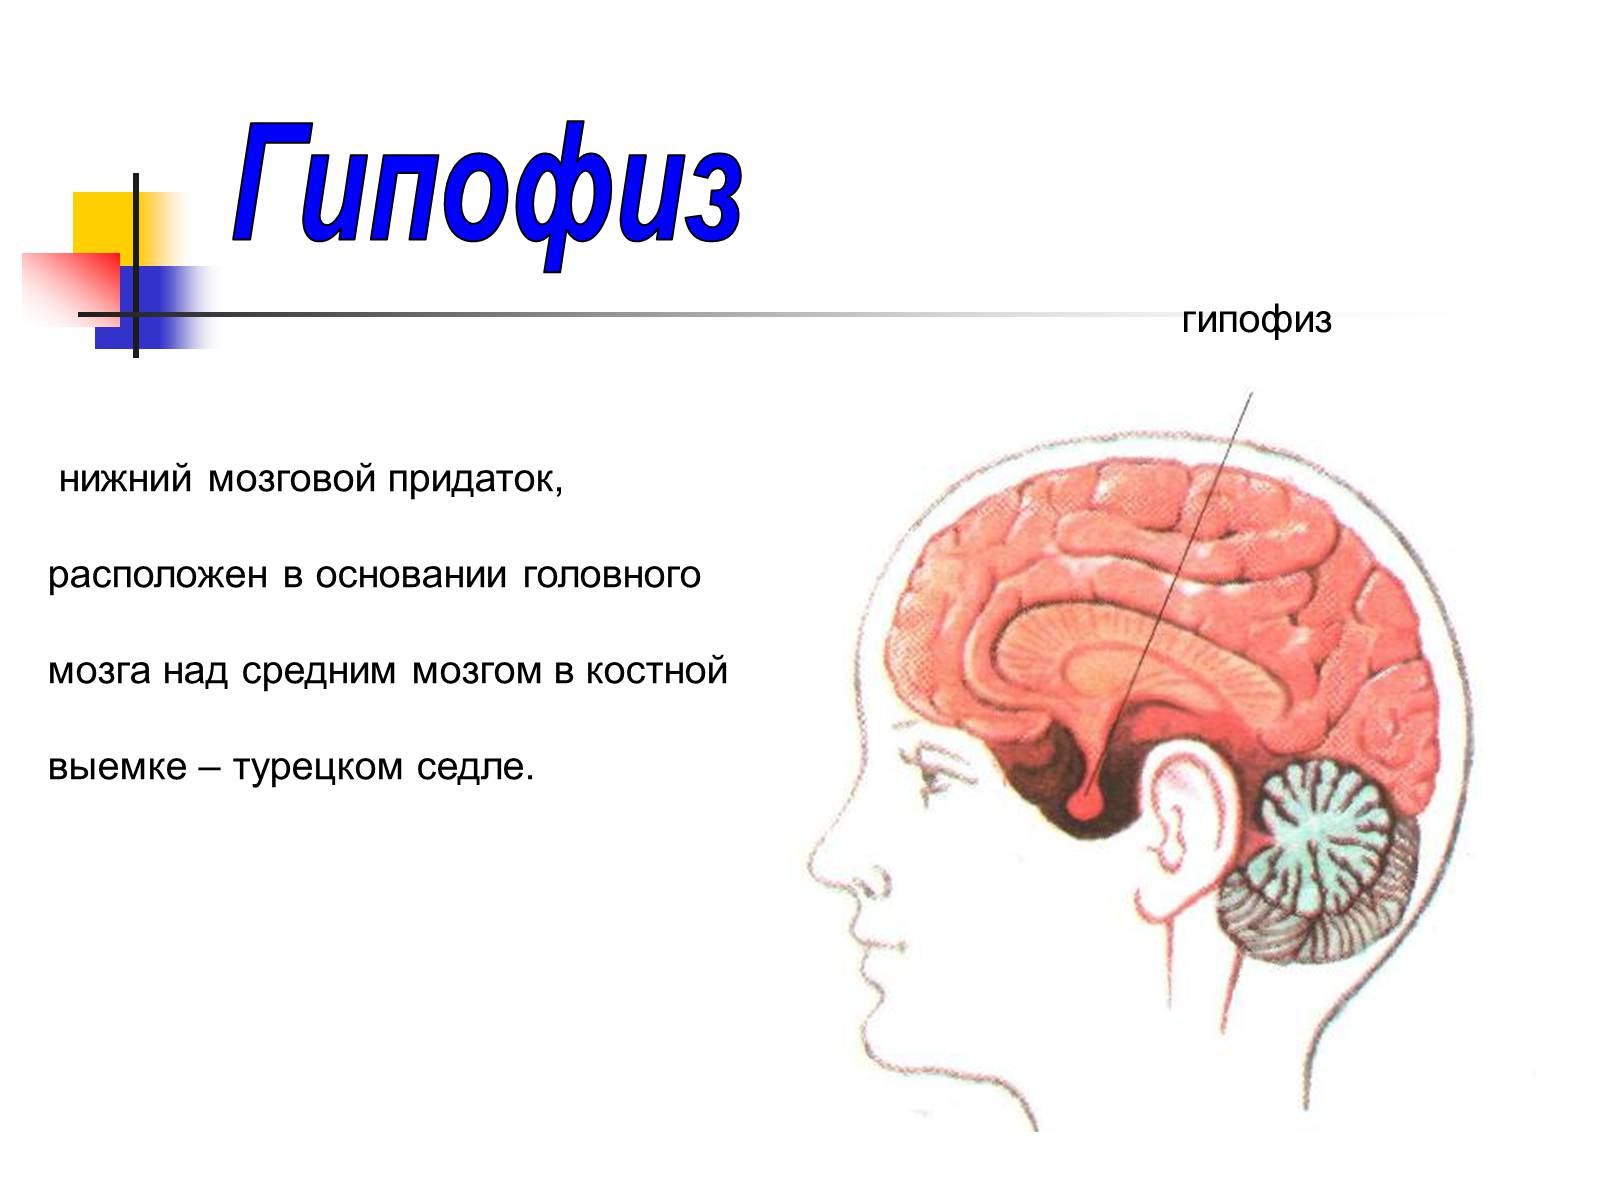 Гипофиз в голове. Головной мозг человека, гипофиз анатомия. Отделы головного мозга гипофиз. Функции гипофиза головного мозга. Расположение гипофиза рисунок.